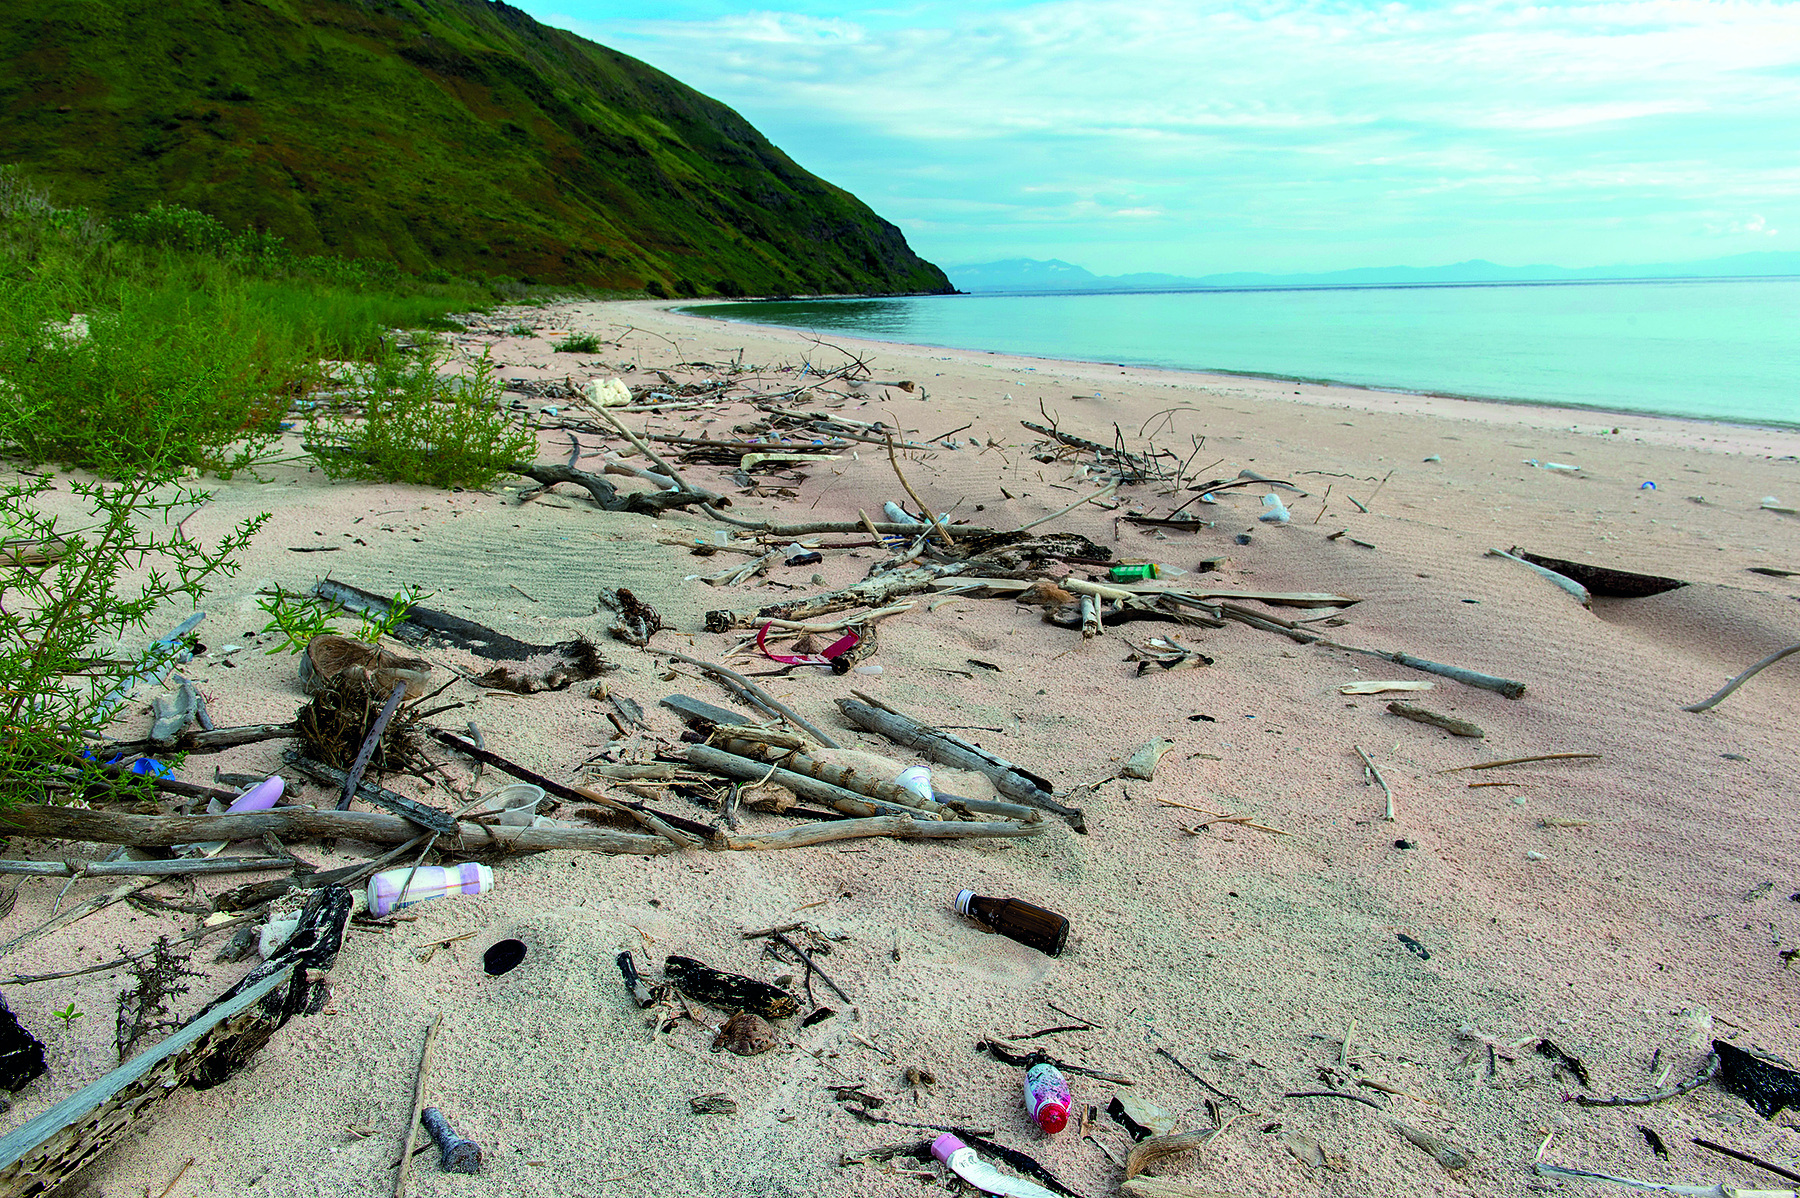 Fotografia. O ângulo da imagem evidencia em primeiro plano a faixa de areia de uma praia onde há diversos galhos de árvore quebrados e a presença de lixo e resíduos plásticos entre eles. Ao fundo, à direita, está o mar e o céu. à esquerda, vegetação arbustiva e um morro.